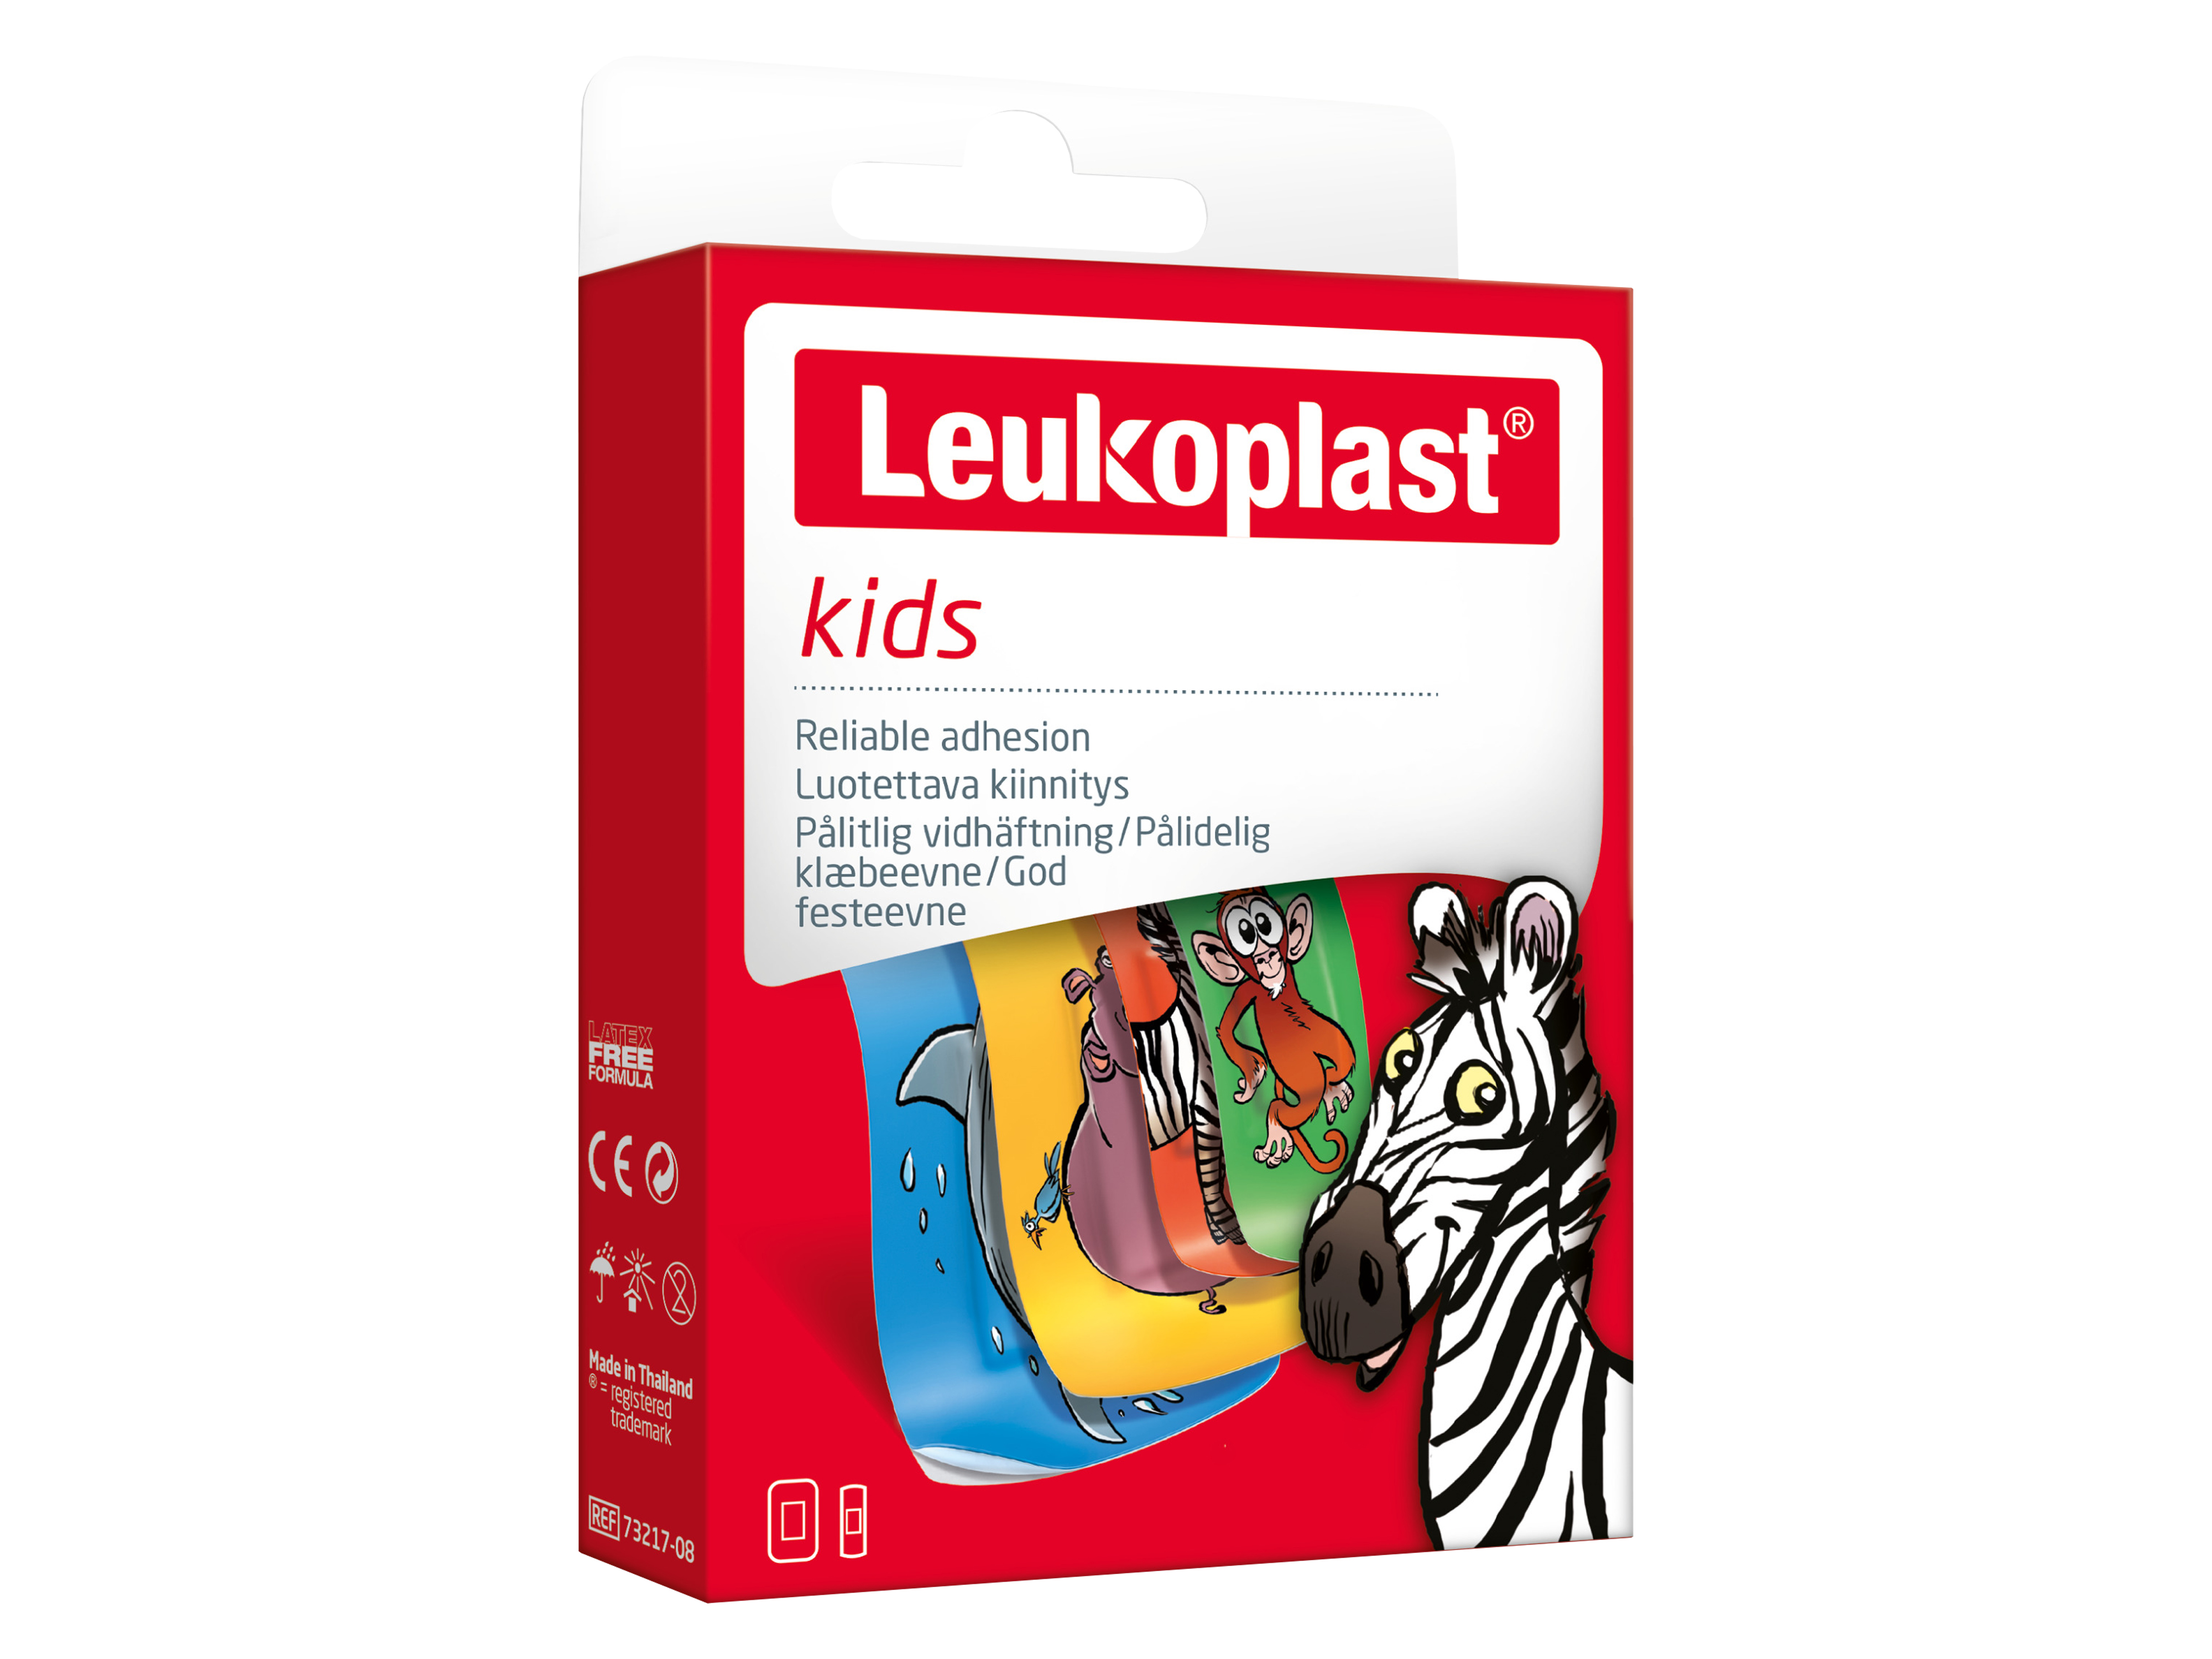 Leukoplast Kids barneplaster, 1 stk